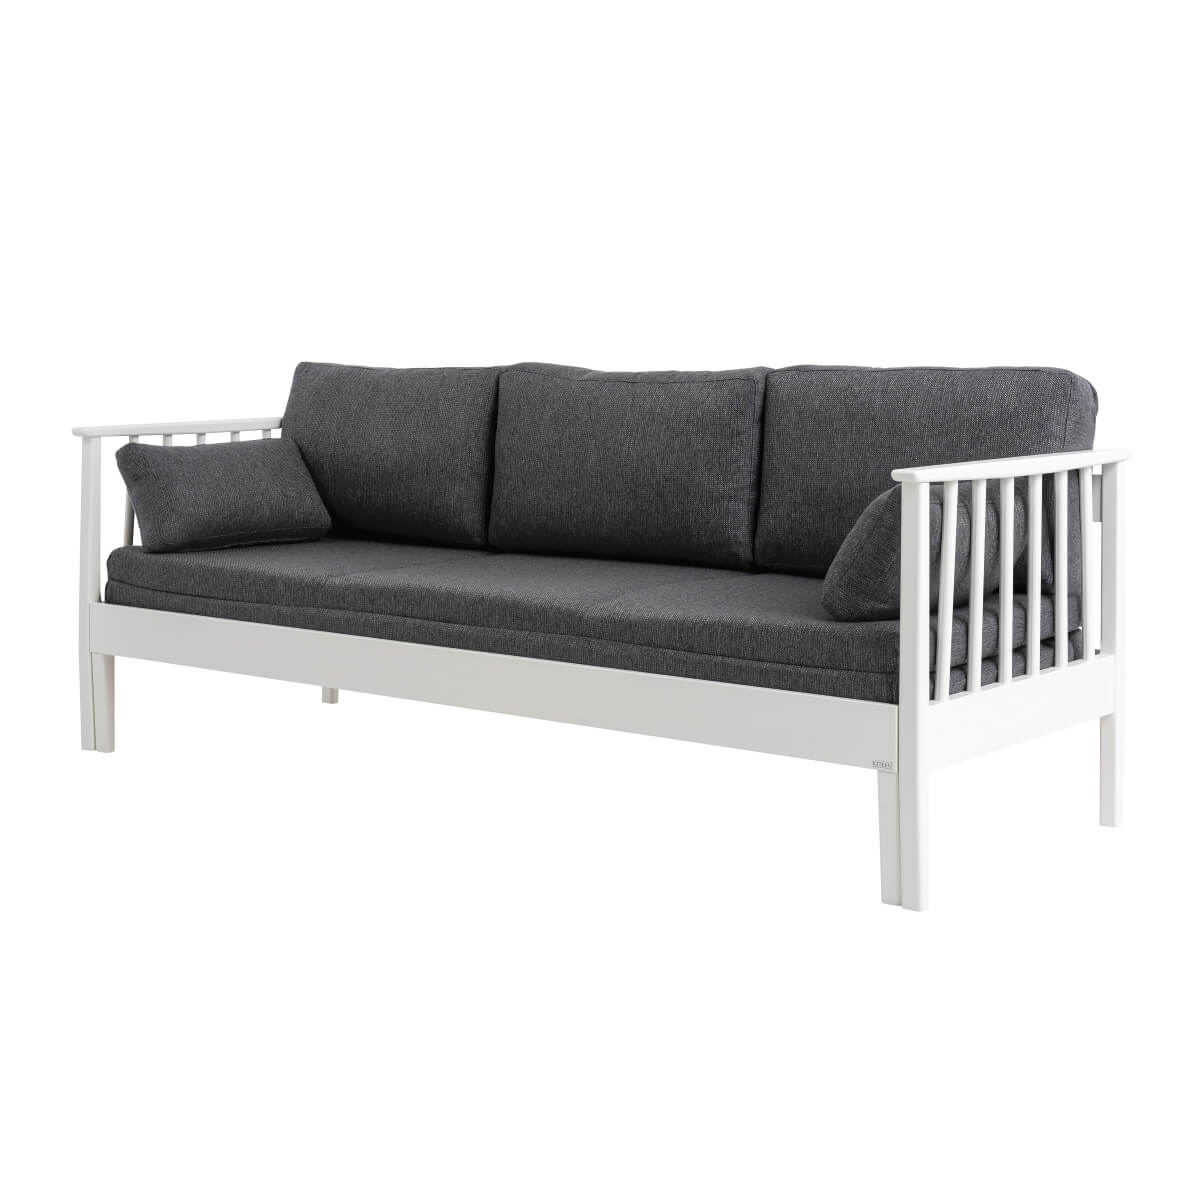 Sofa wysuwana do przodu NOEL z drewna brzozy skandynawskiej lakierowanej na biało z szarym materacem. Nowoczesny design